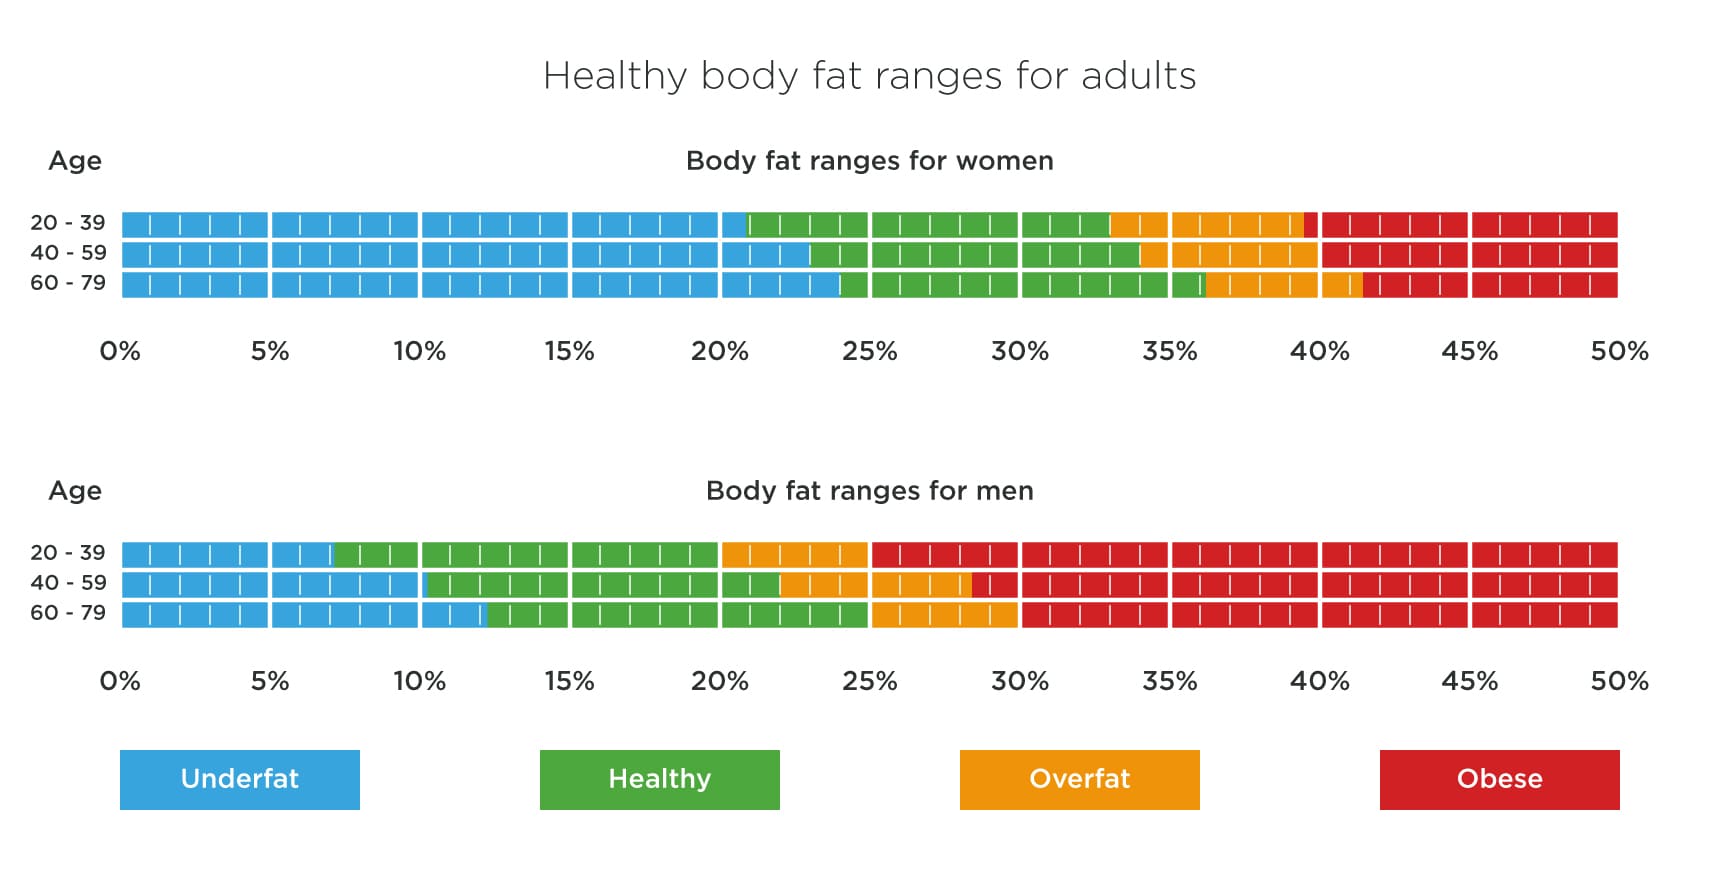 การหาค่าดัชนีมวลกาย* (Body Mass Index : BMI)